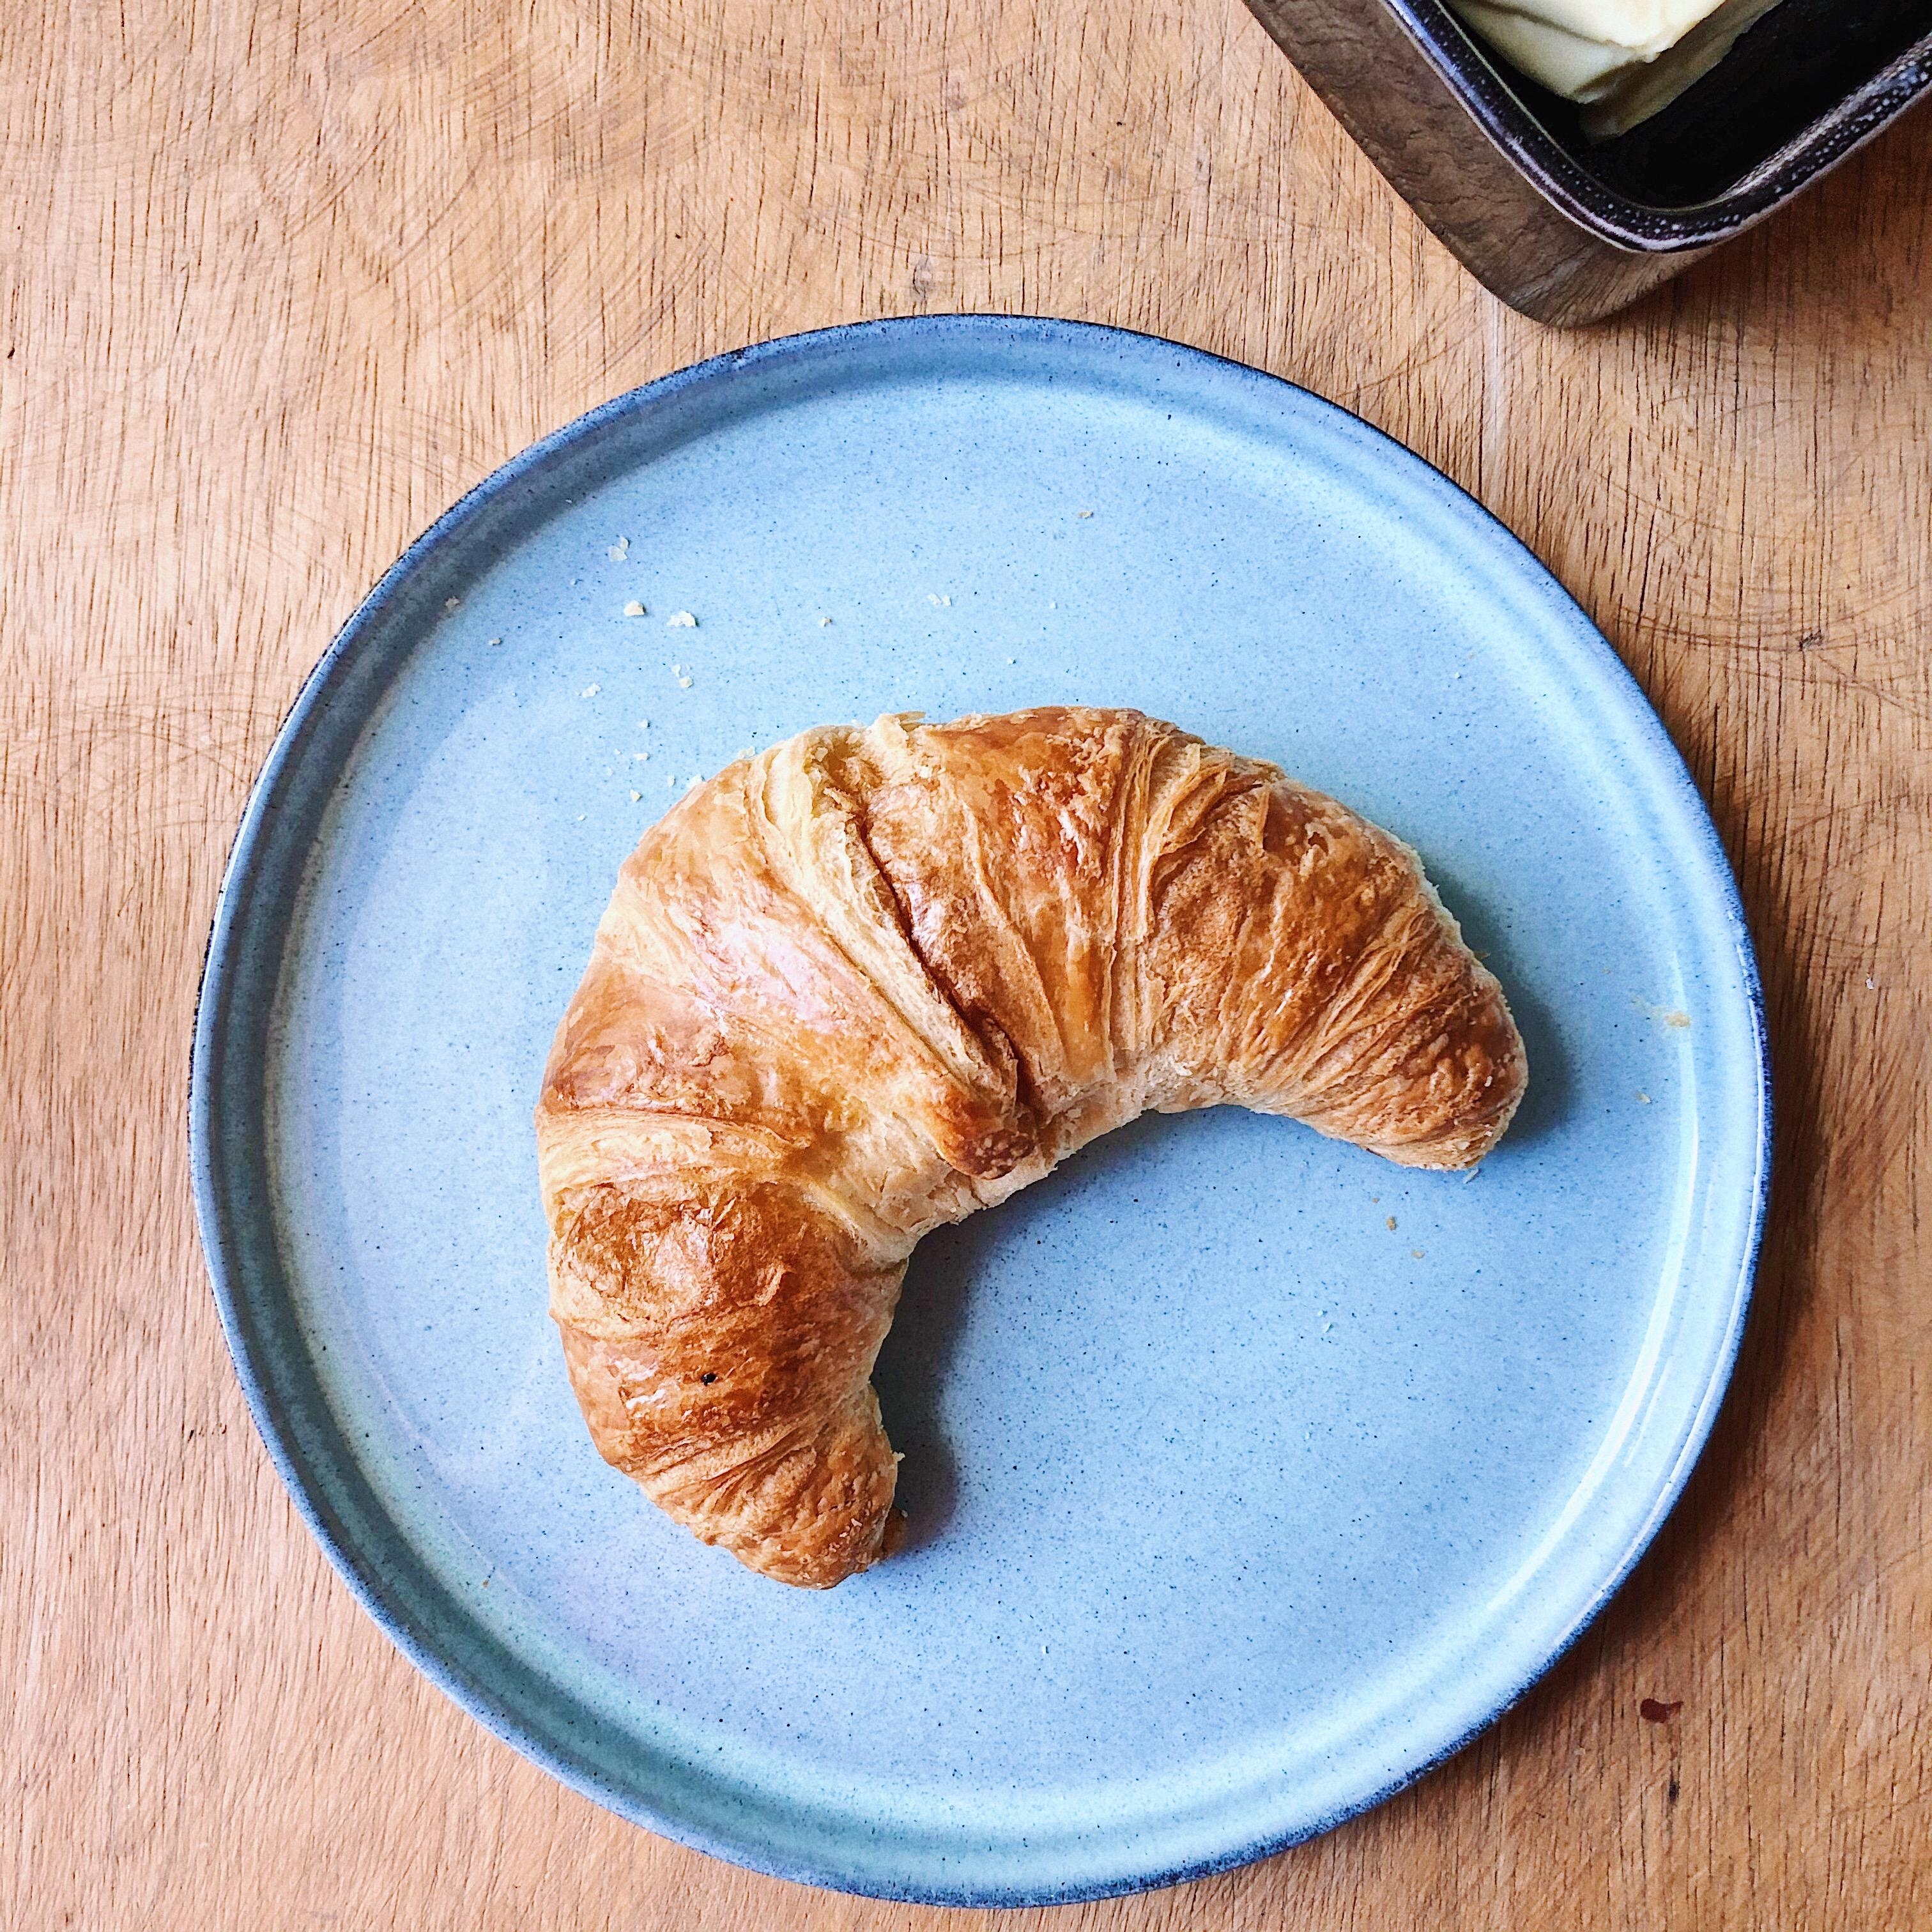 Wochenenden wurden für Croissants erfunden 🥐 
#Frühstück #Teller #Porzellan #Keramik